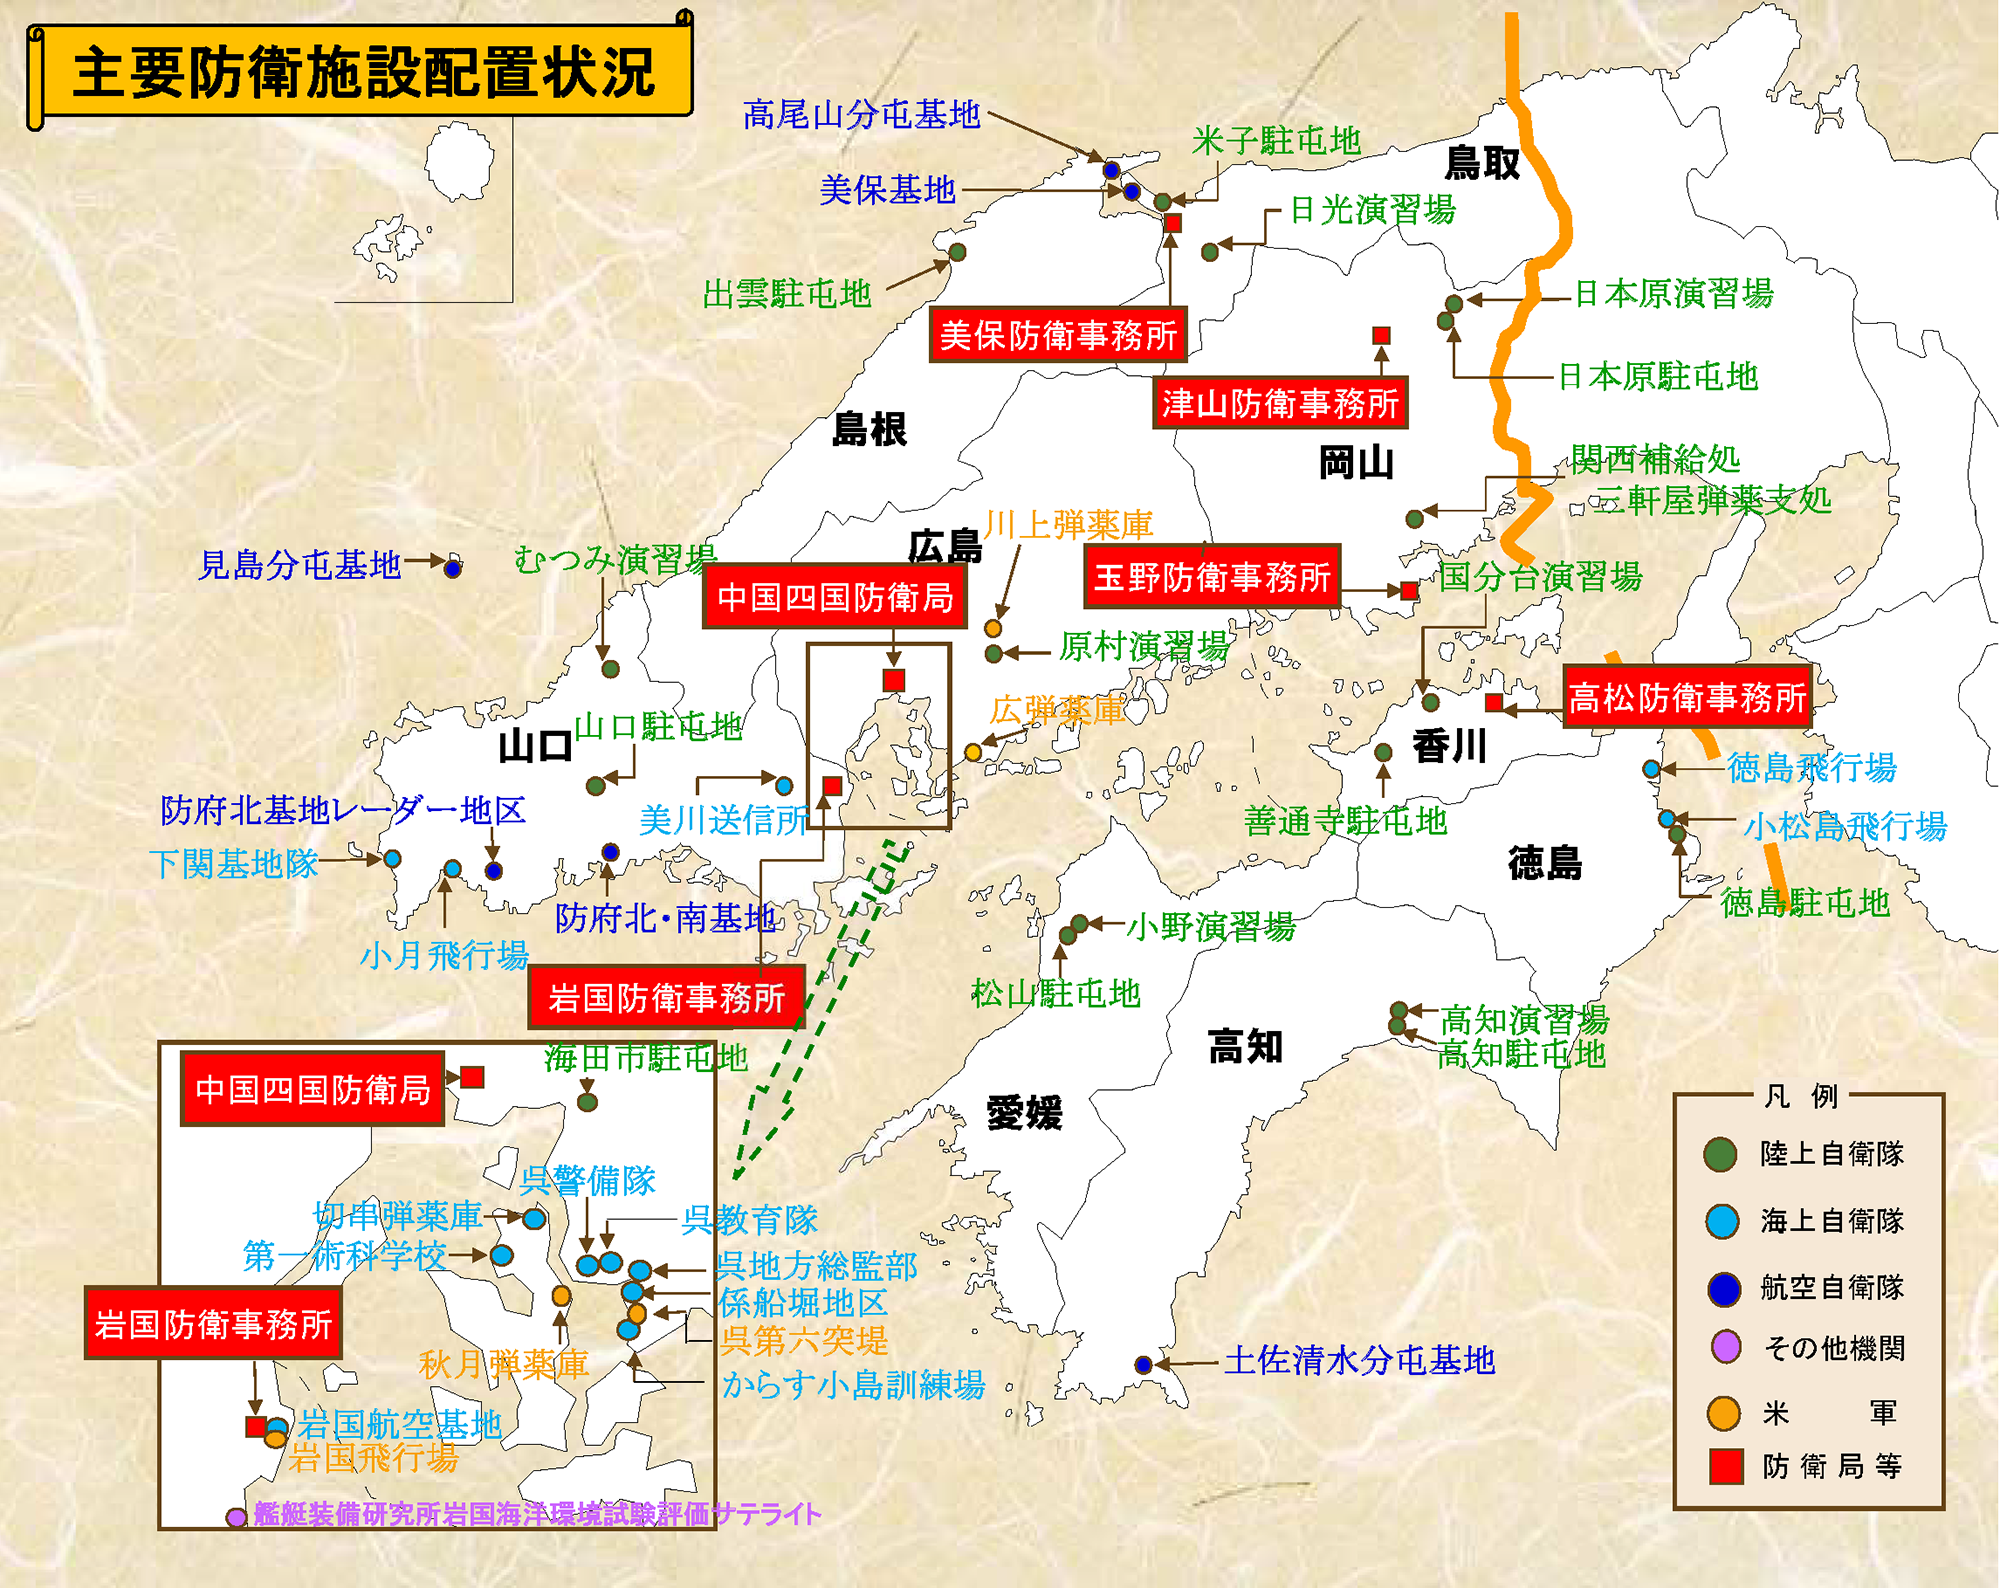 中国四国防衛局管内の主な防衛拠点示した図